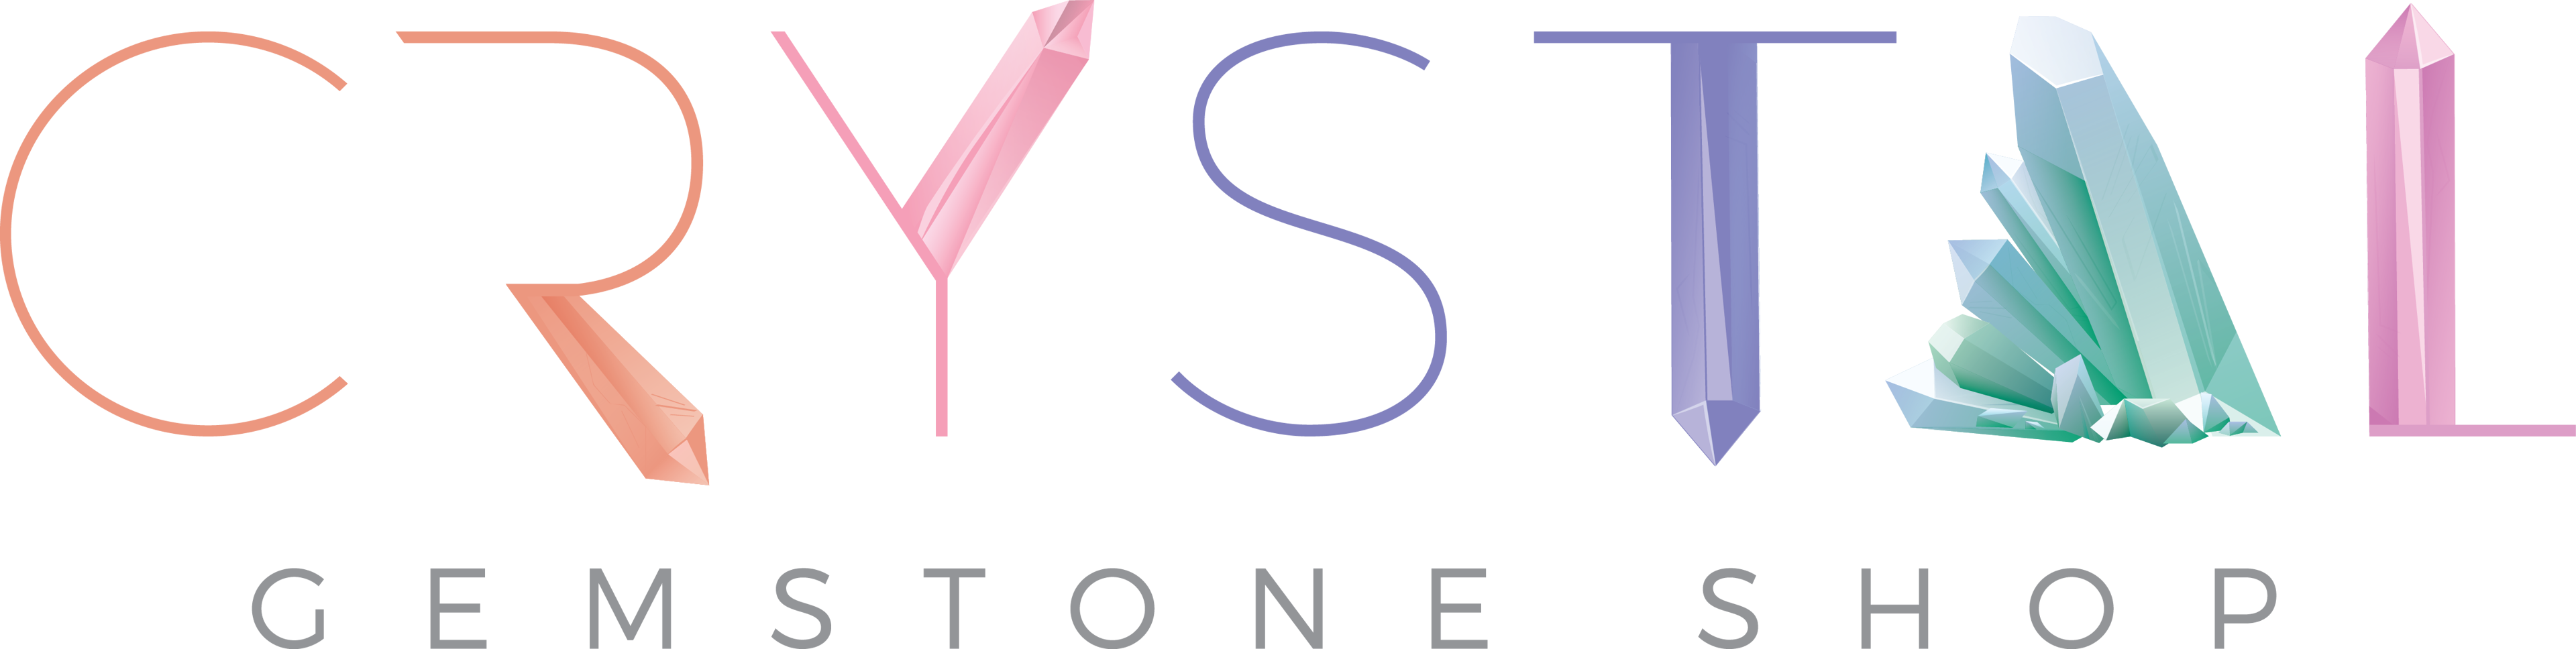 Crystal Gemstone Shop logo